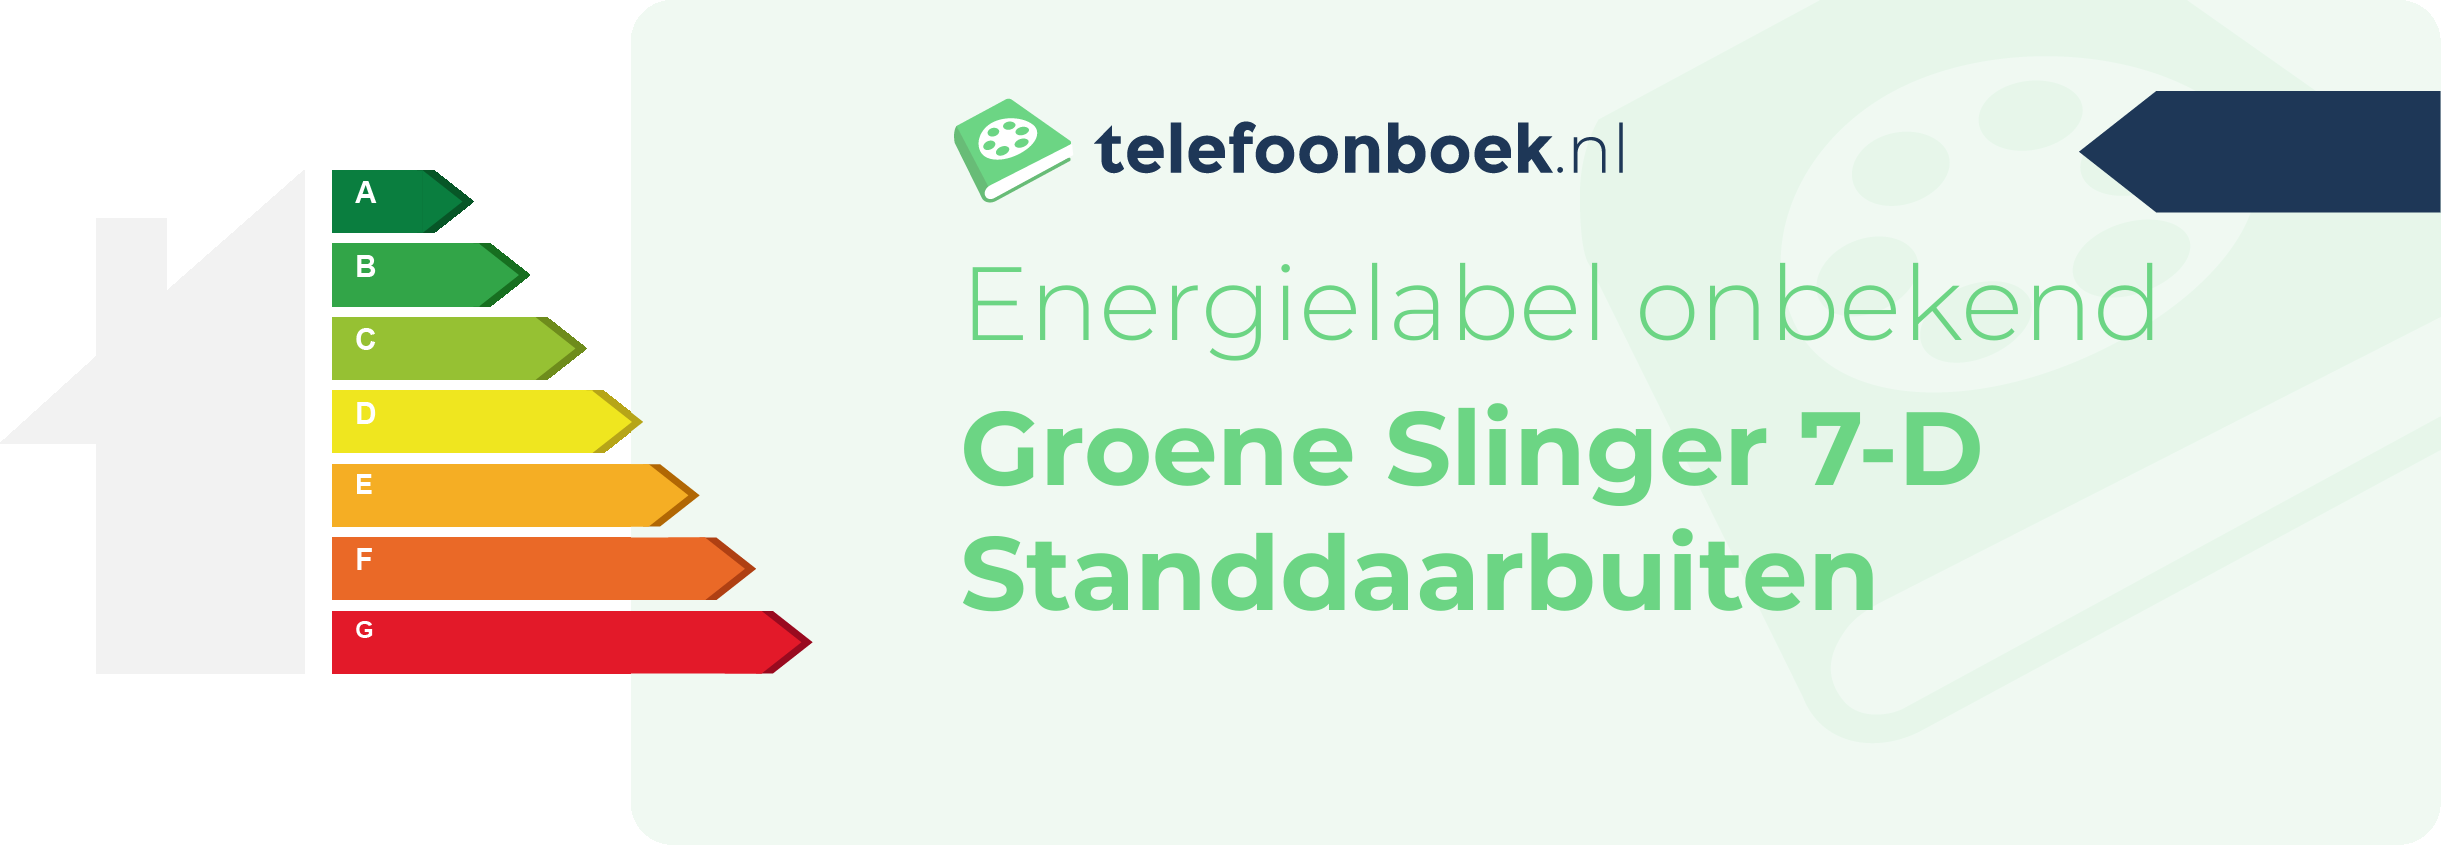 Energielabel Groene Slinger 7-D Standdaarbuiten